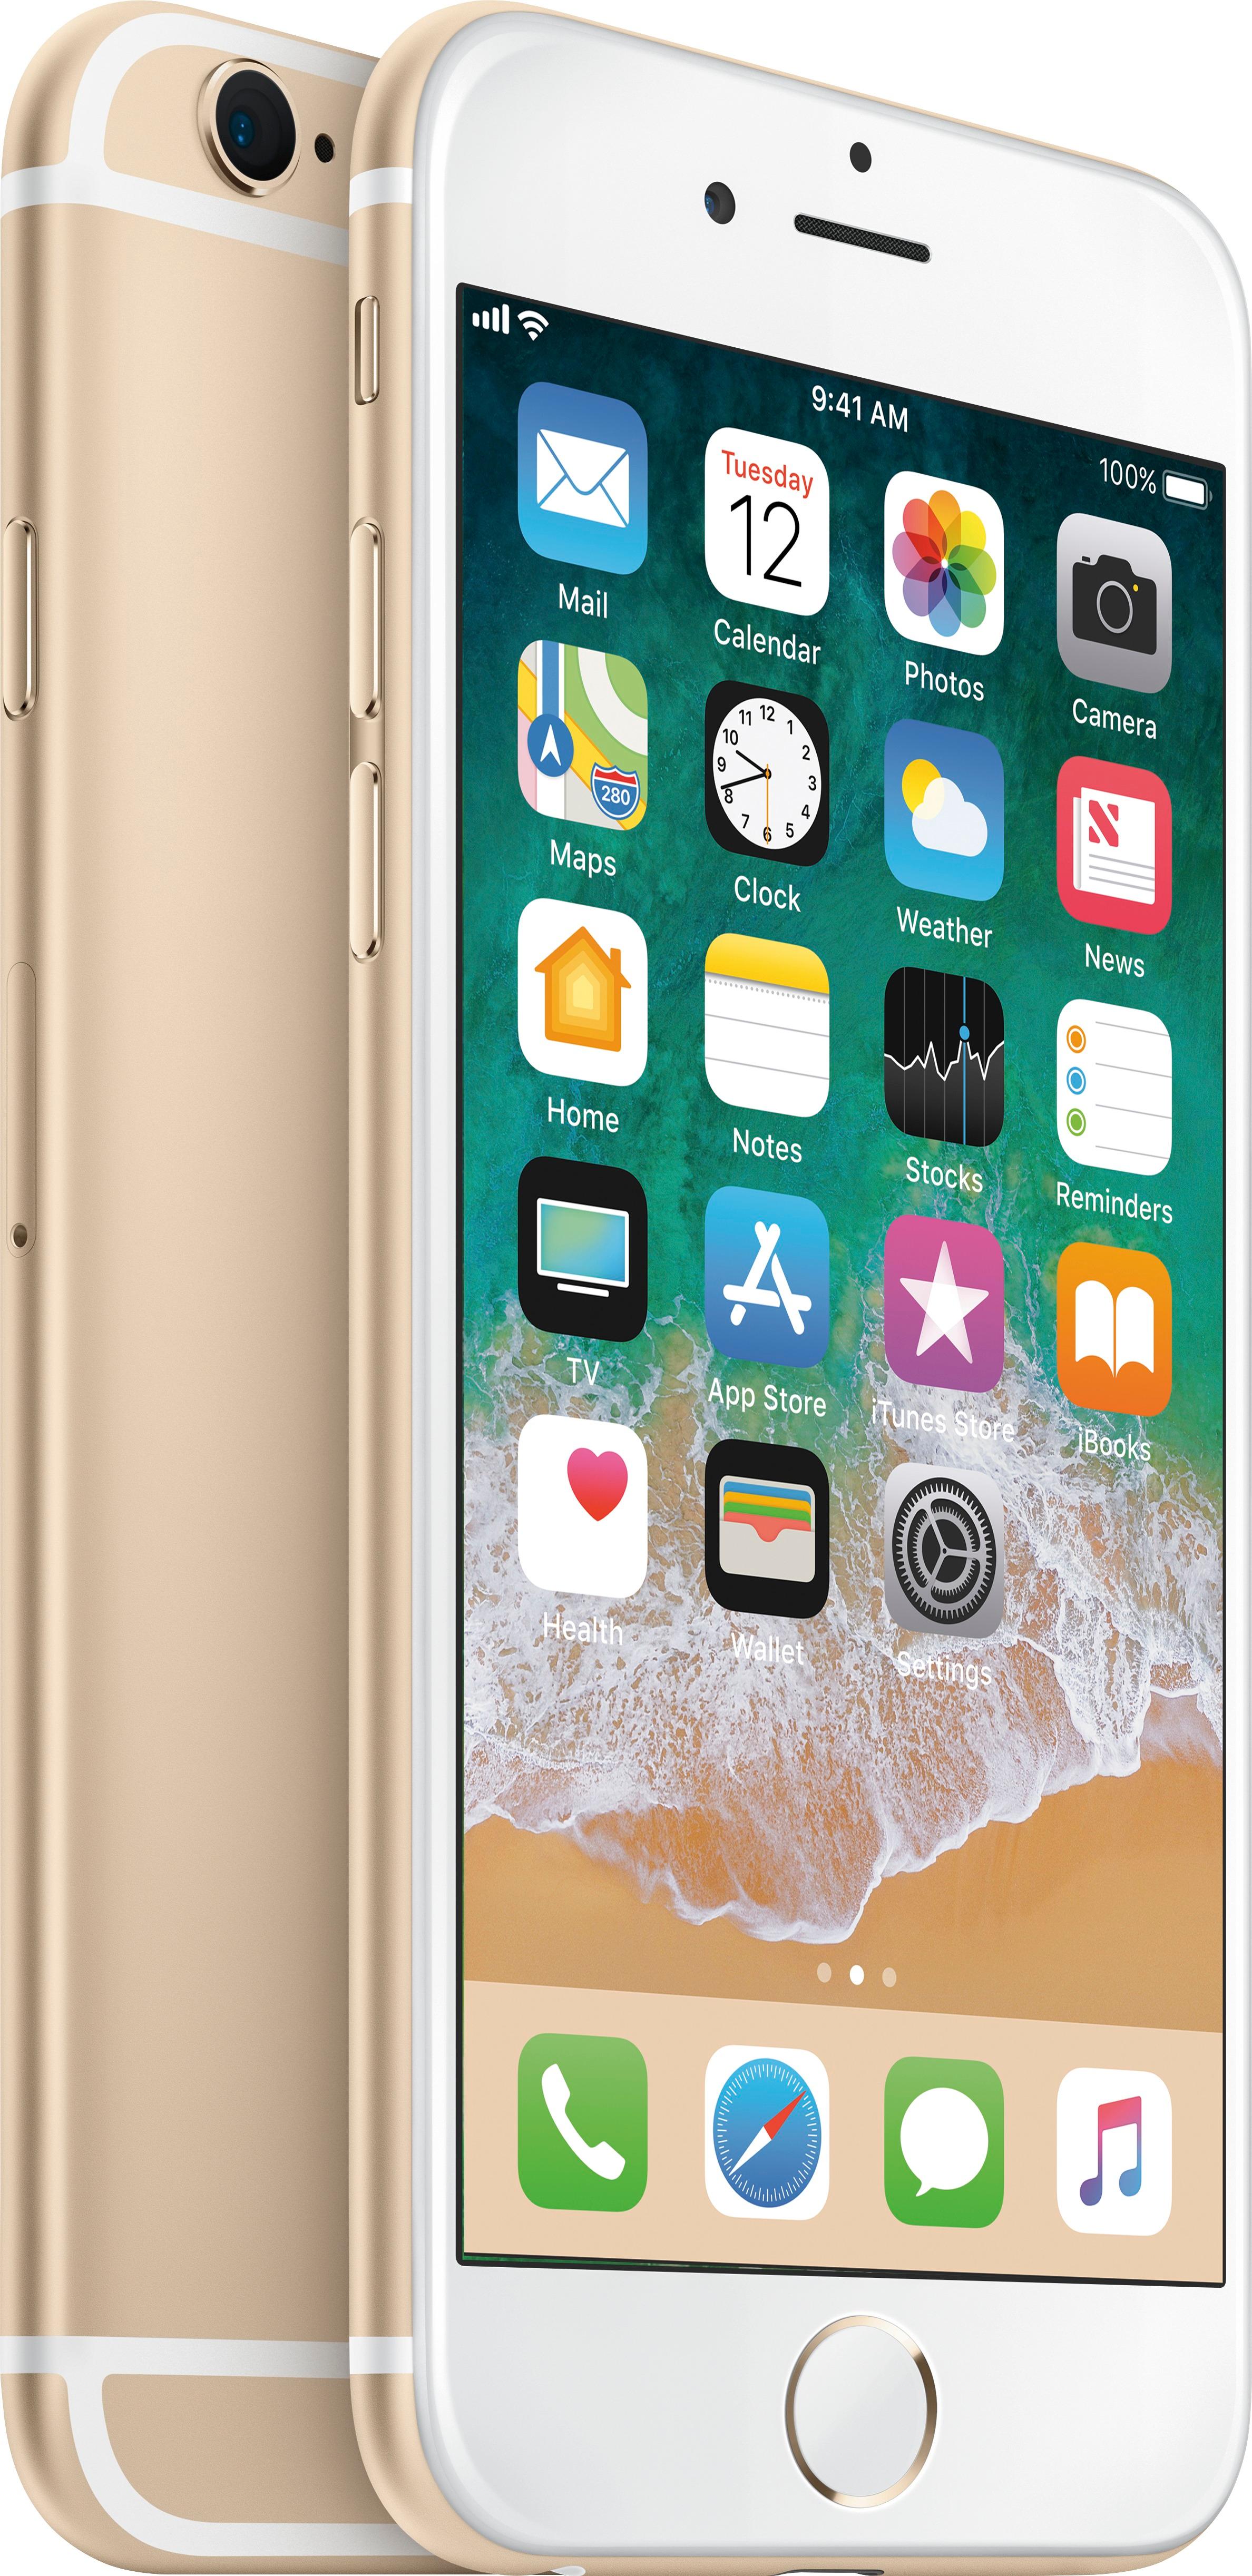 スマートフォン/携帯電話 スマートフォン本体 Best Buy: Apple iPhone 6s 32GB Gold (Sprint) MN1K2LL/A